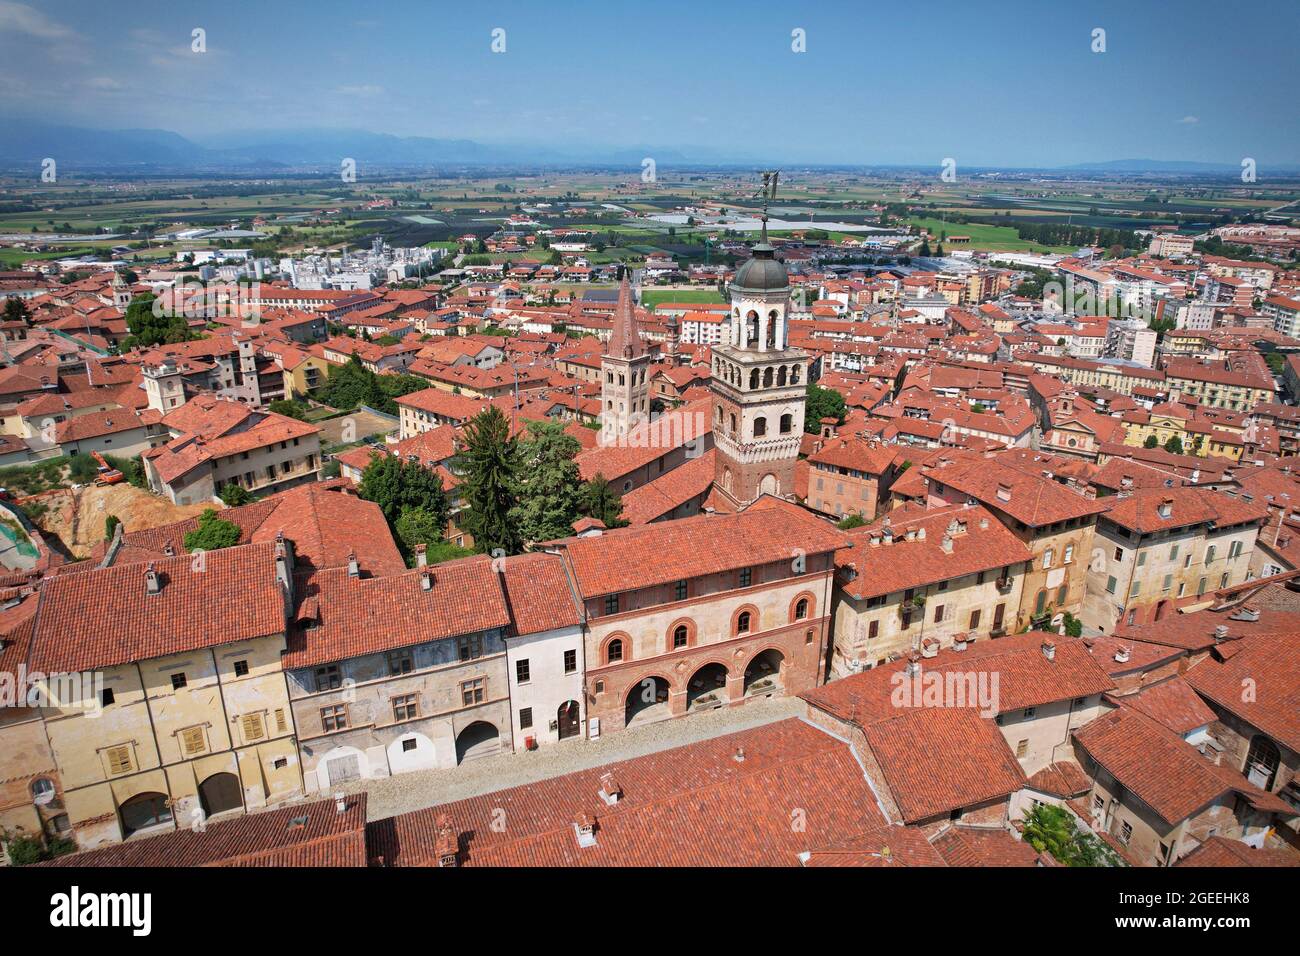 Luftaufnahme der Stadt Saluzzo, eines der am besten erhaltenen mittelalterlichen Dörfer im Piemont, Italien Stockfoto